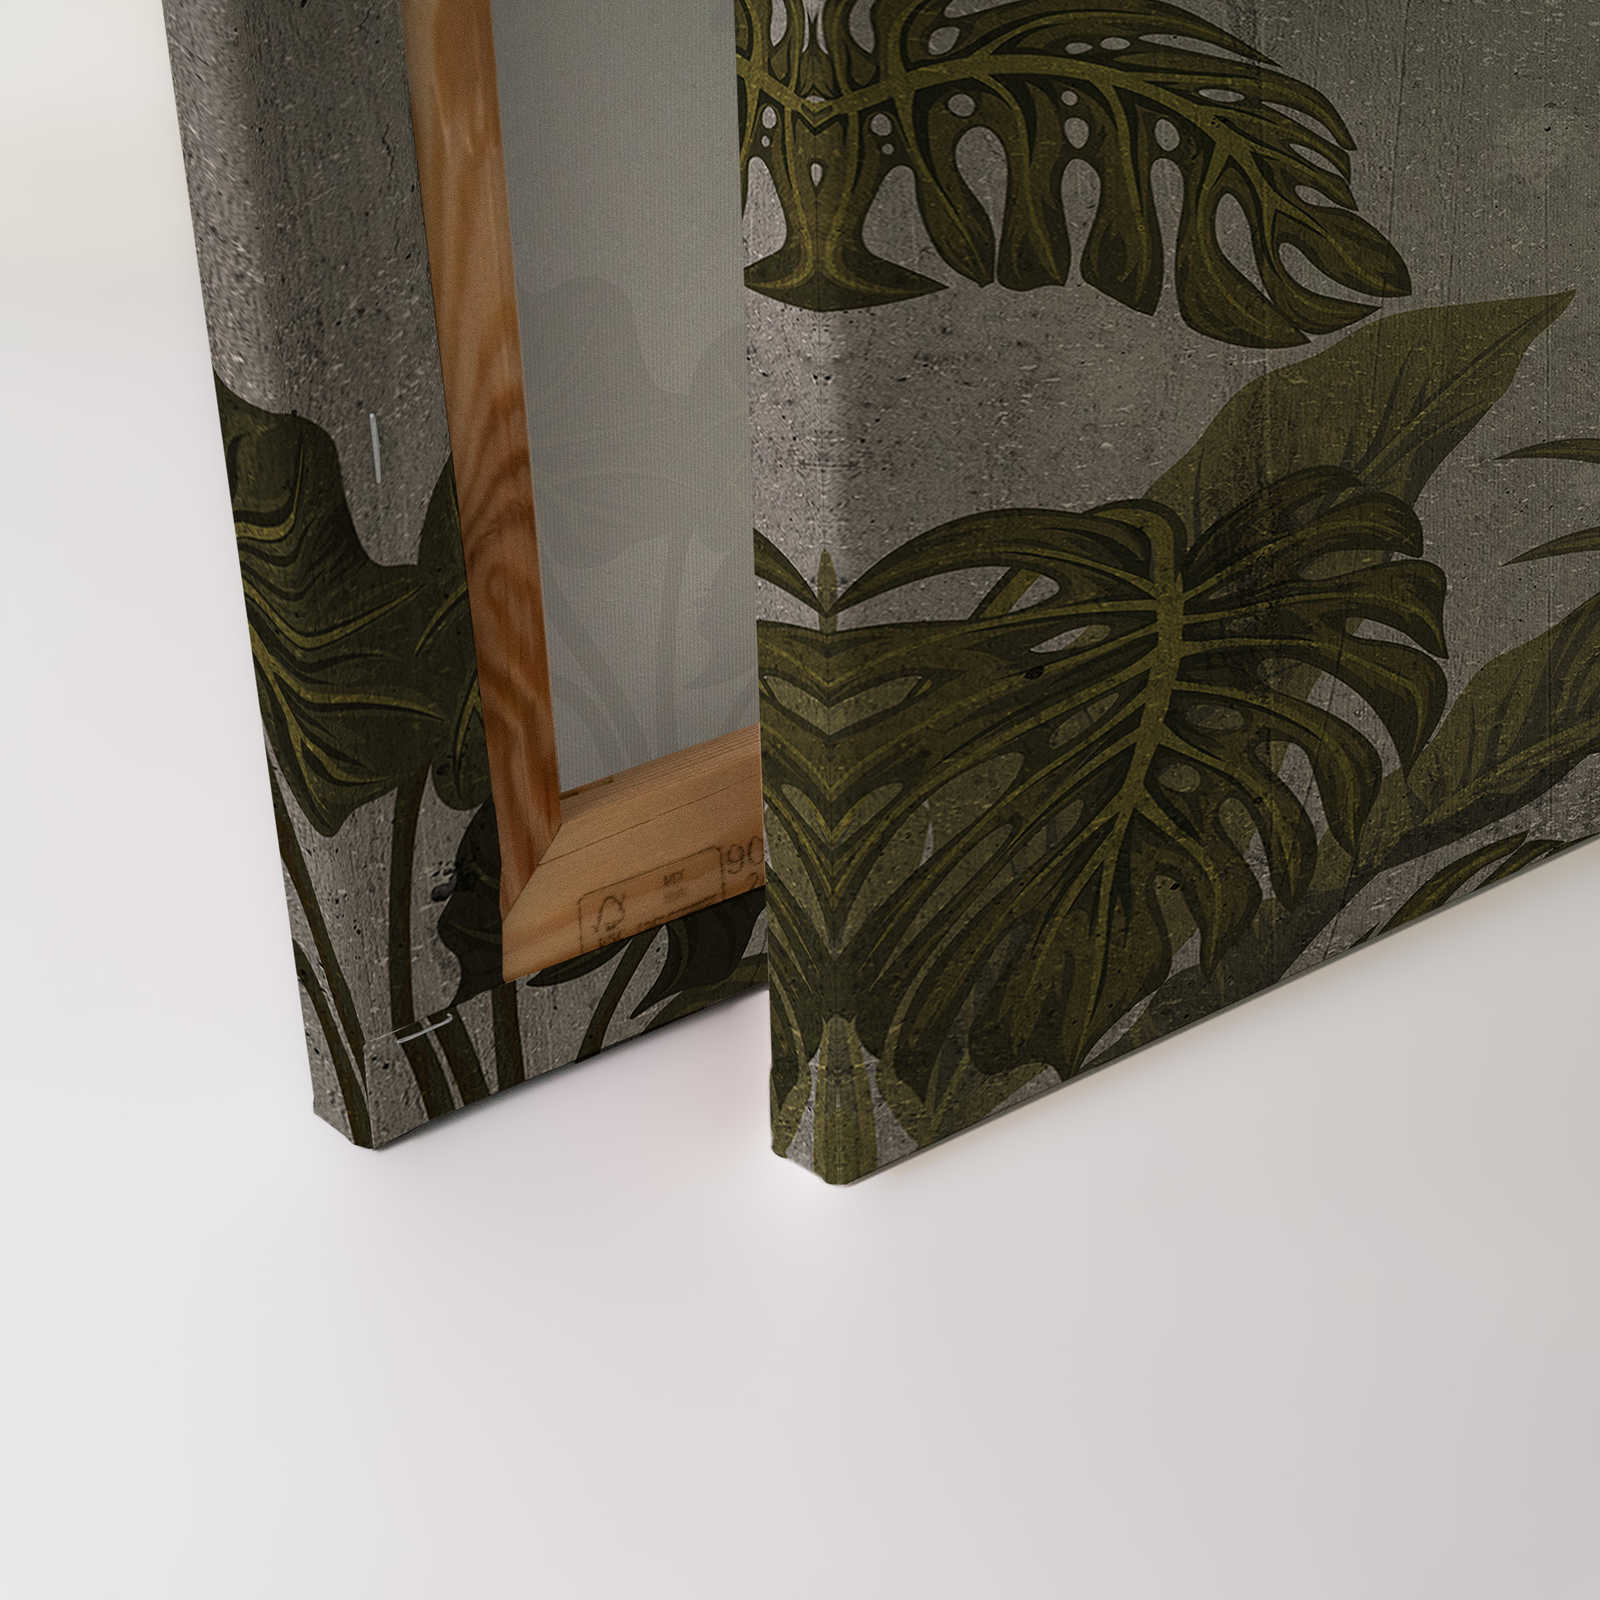             Quadro su tela con paesaggio tropicale su sfondo in cemento - 0,90 m x 0,60 m
        